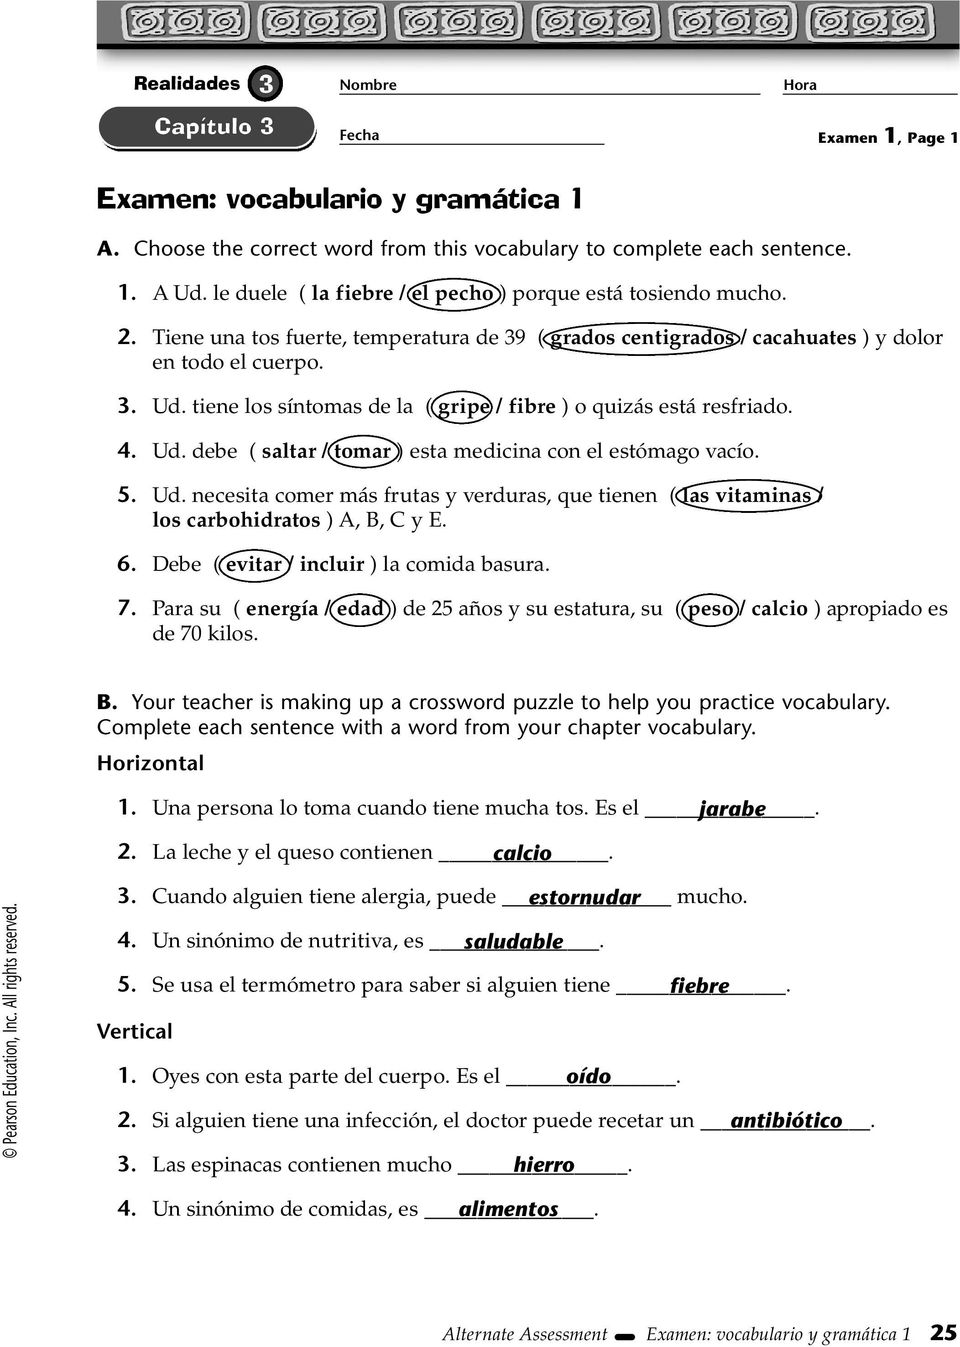 Examen Voario Y Gramatica 1 Pdf Descargar Libre